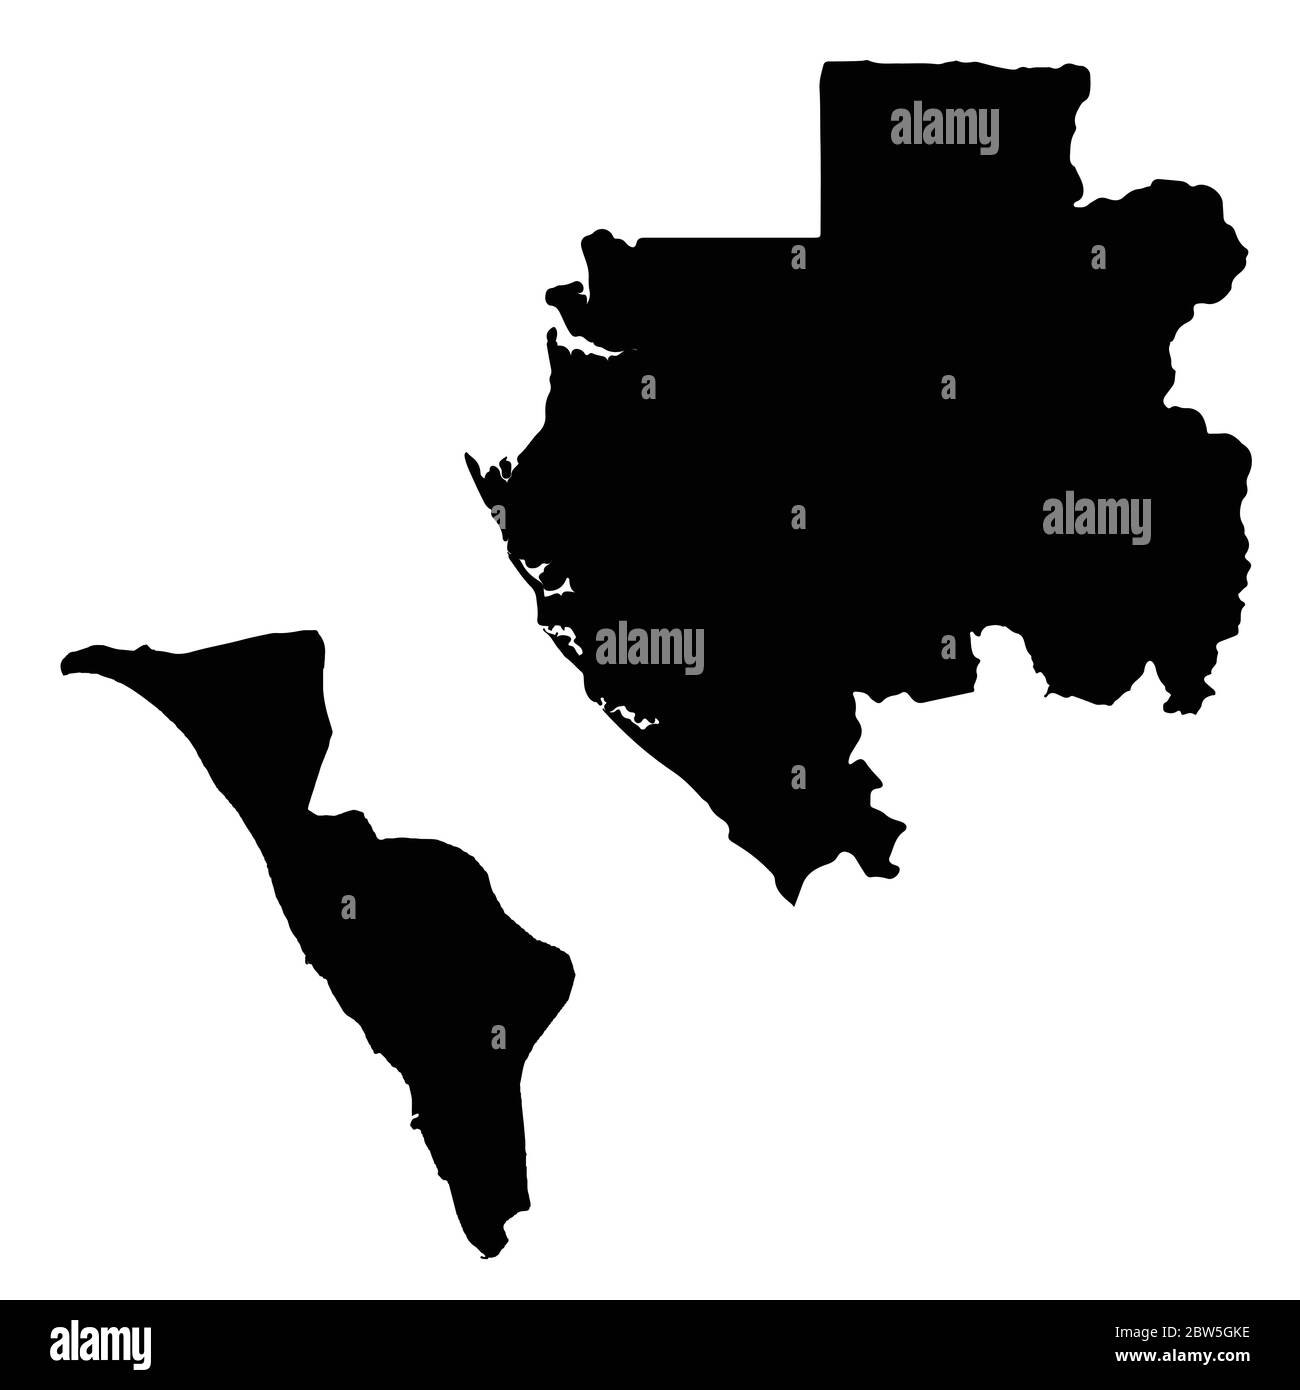 Vektorkarte Gabun und Libreville. Land und Hauptstadt. Isolierte Vektorgrafik. Schwarz auf weißem Hintergrund. EPS 10-Abbildung. Stock Vektor